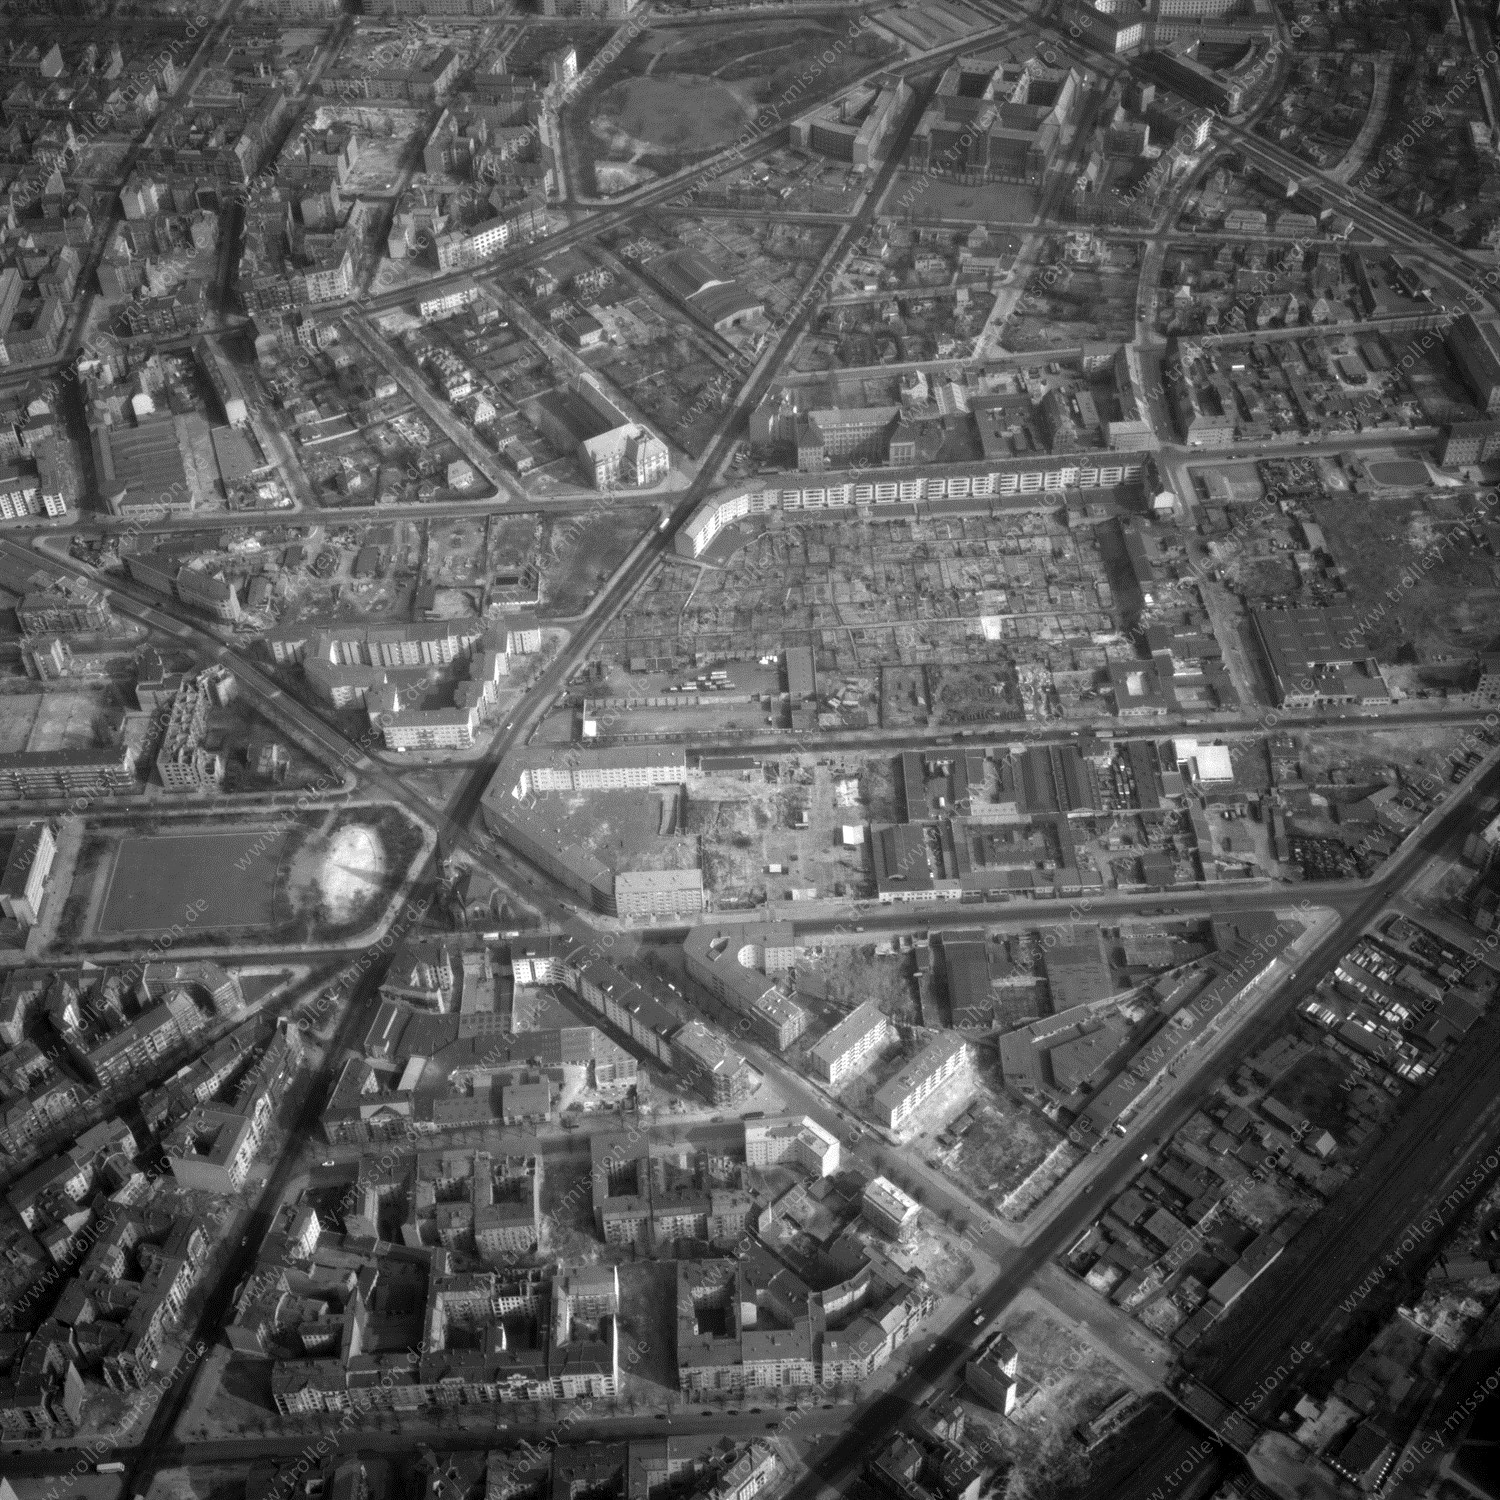 Alte Fotos und Luftbilder von Berlin - Luftbildaufnahme Nr. 08 - Historische Luftaufnahmen von West-Berlin aus dem Jahr 1954 - Flugstrecke Bravo